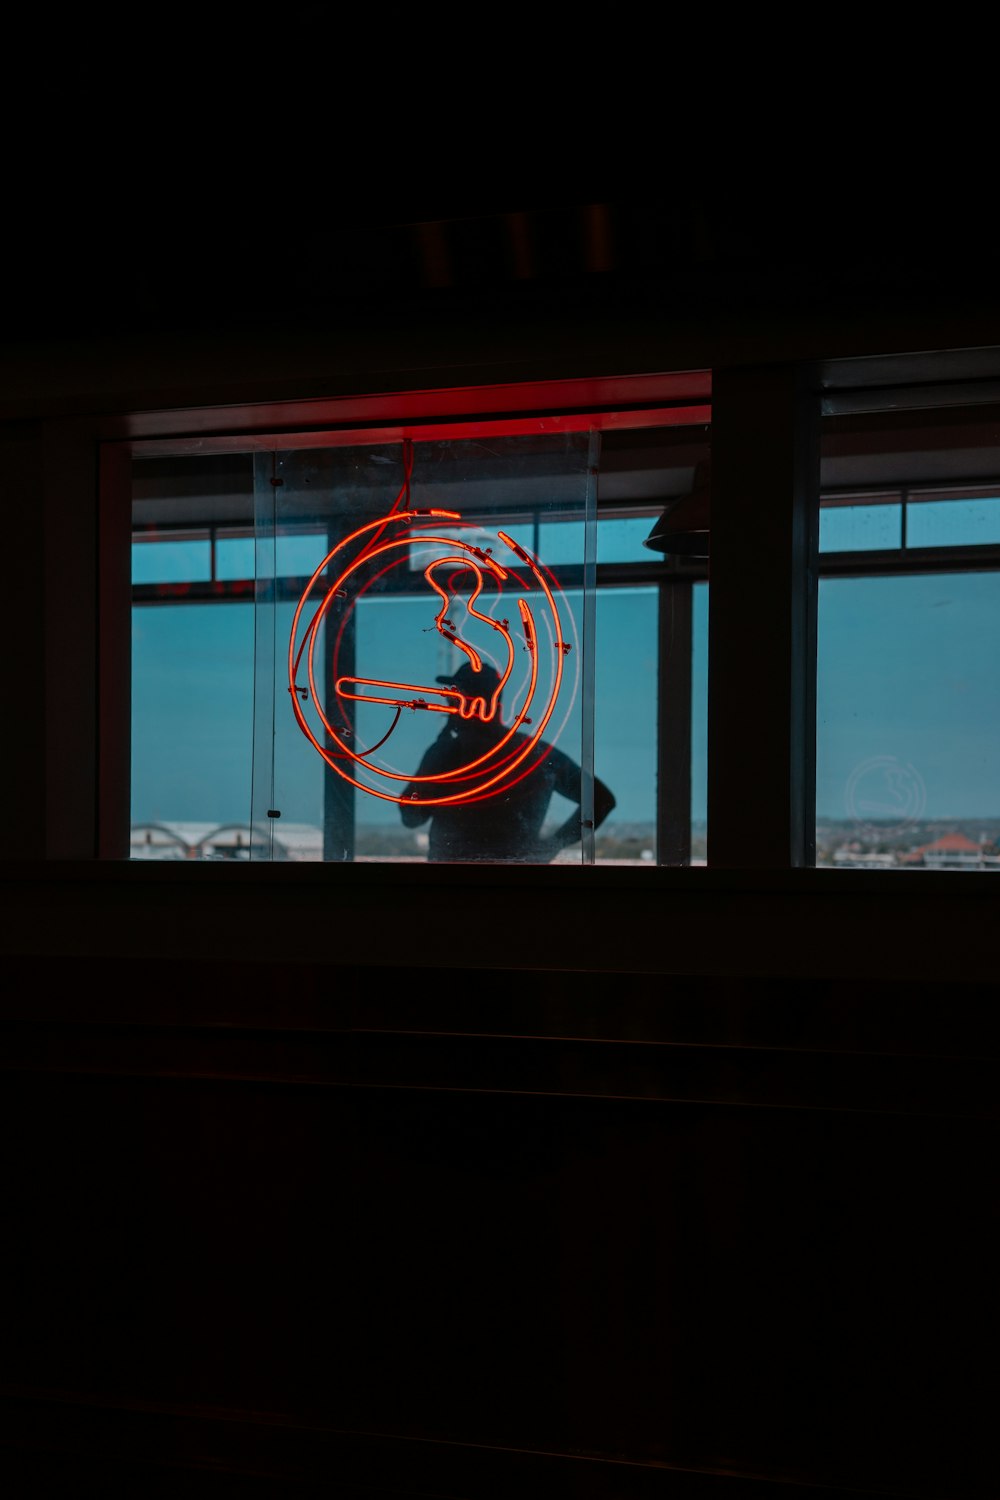 Un'insegna al neon davanti a una finestra in una stanza buia